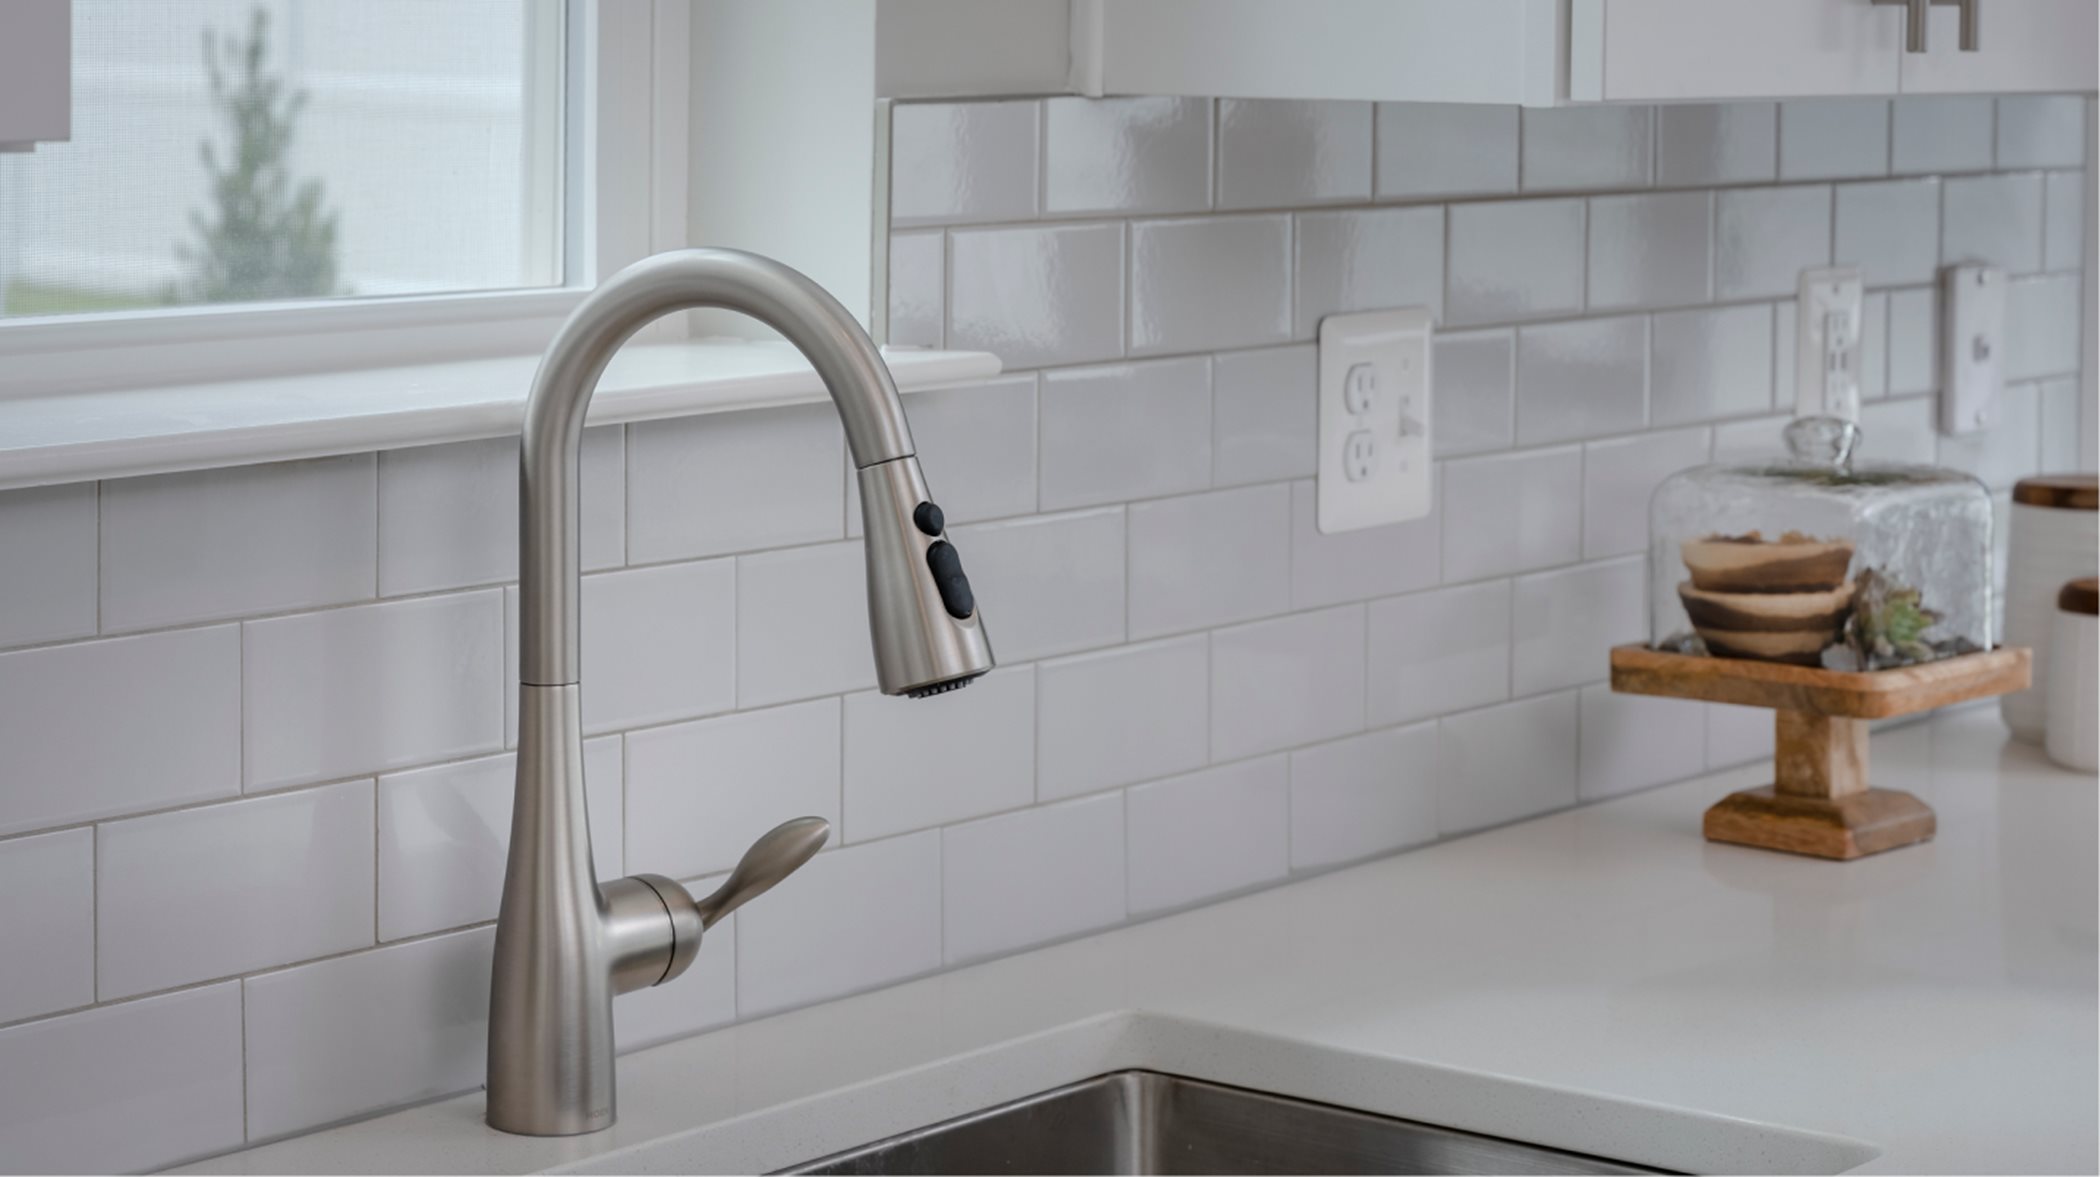 Southport Slab Kitchen Faucet, Sink, Tile Backsplash